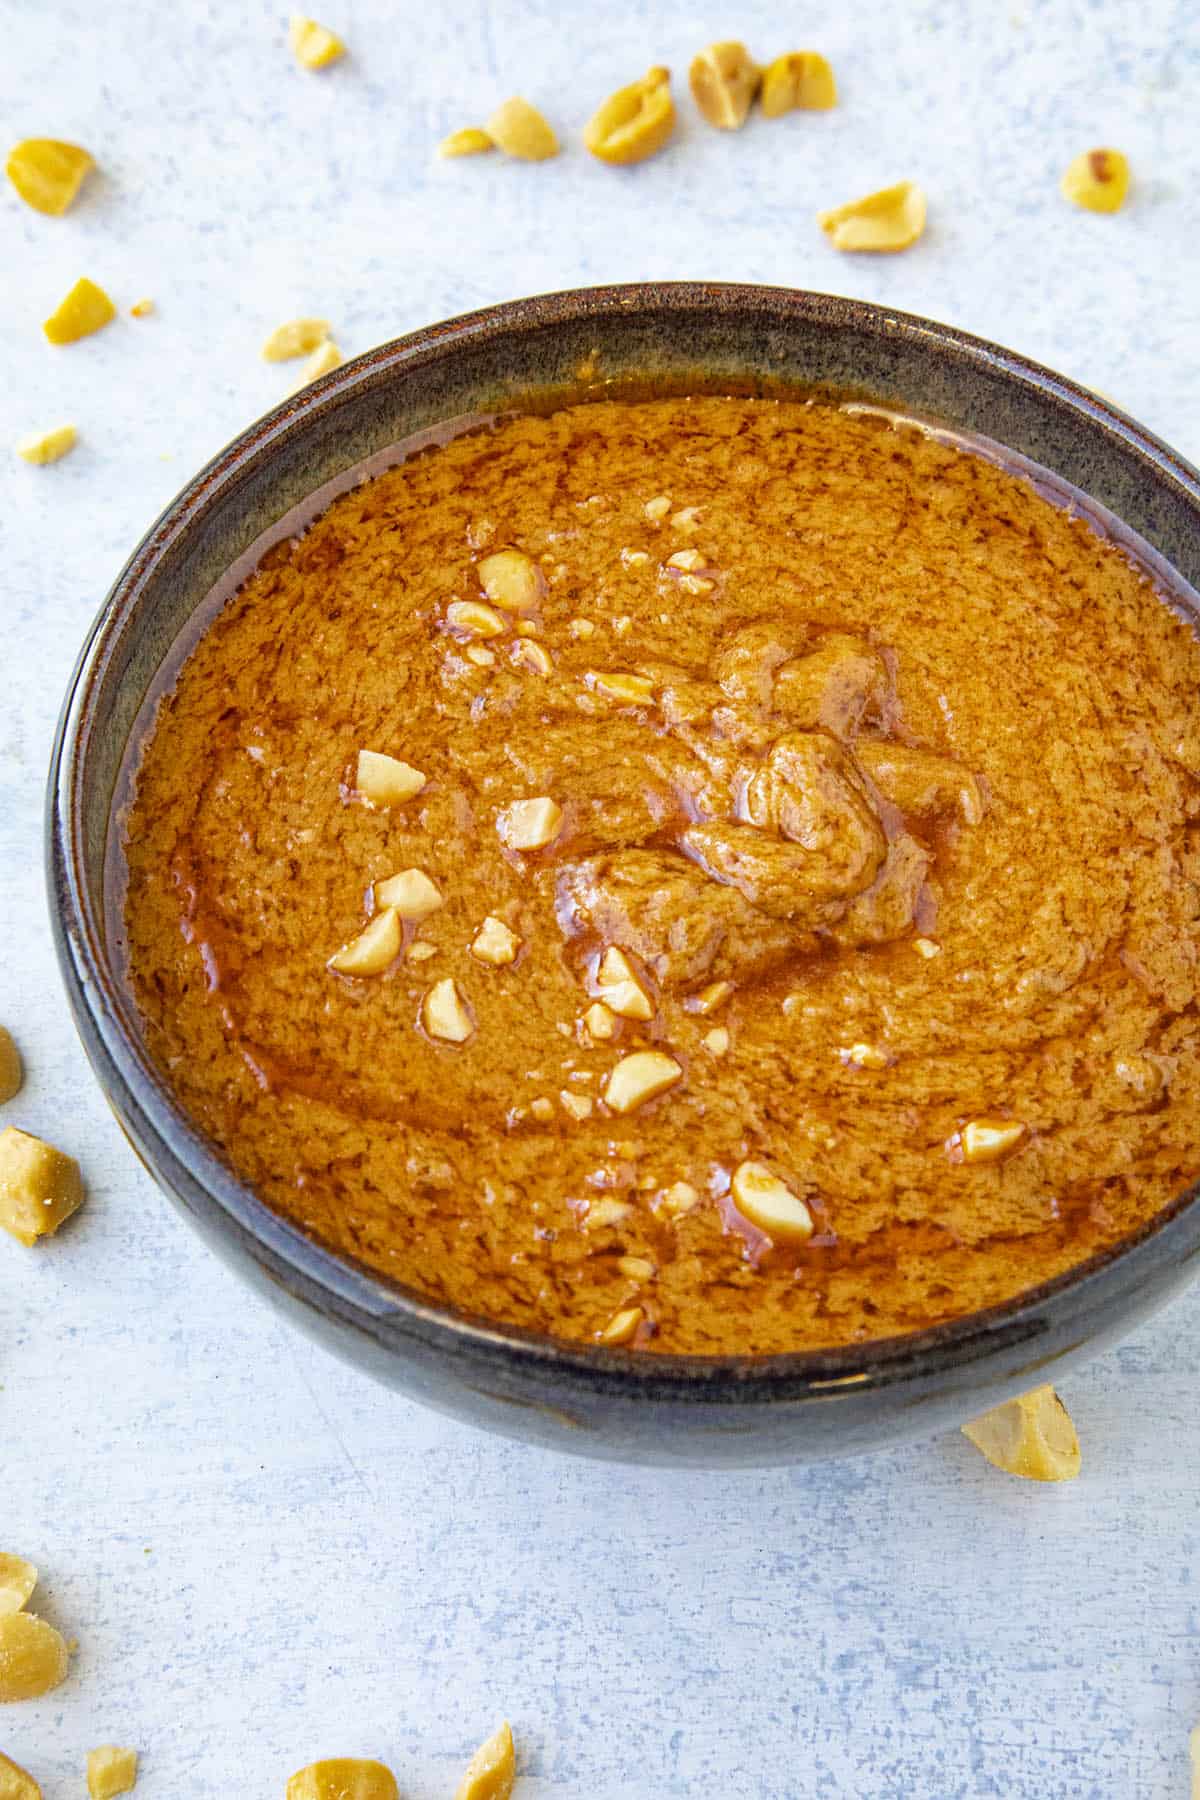 Easy Thai Peanut Sauce in a bowl.